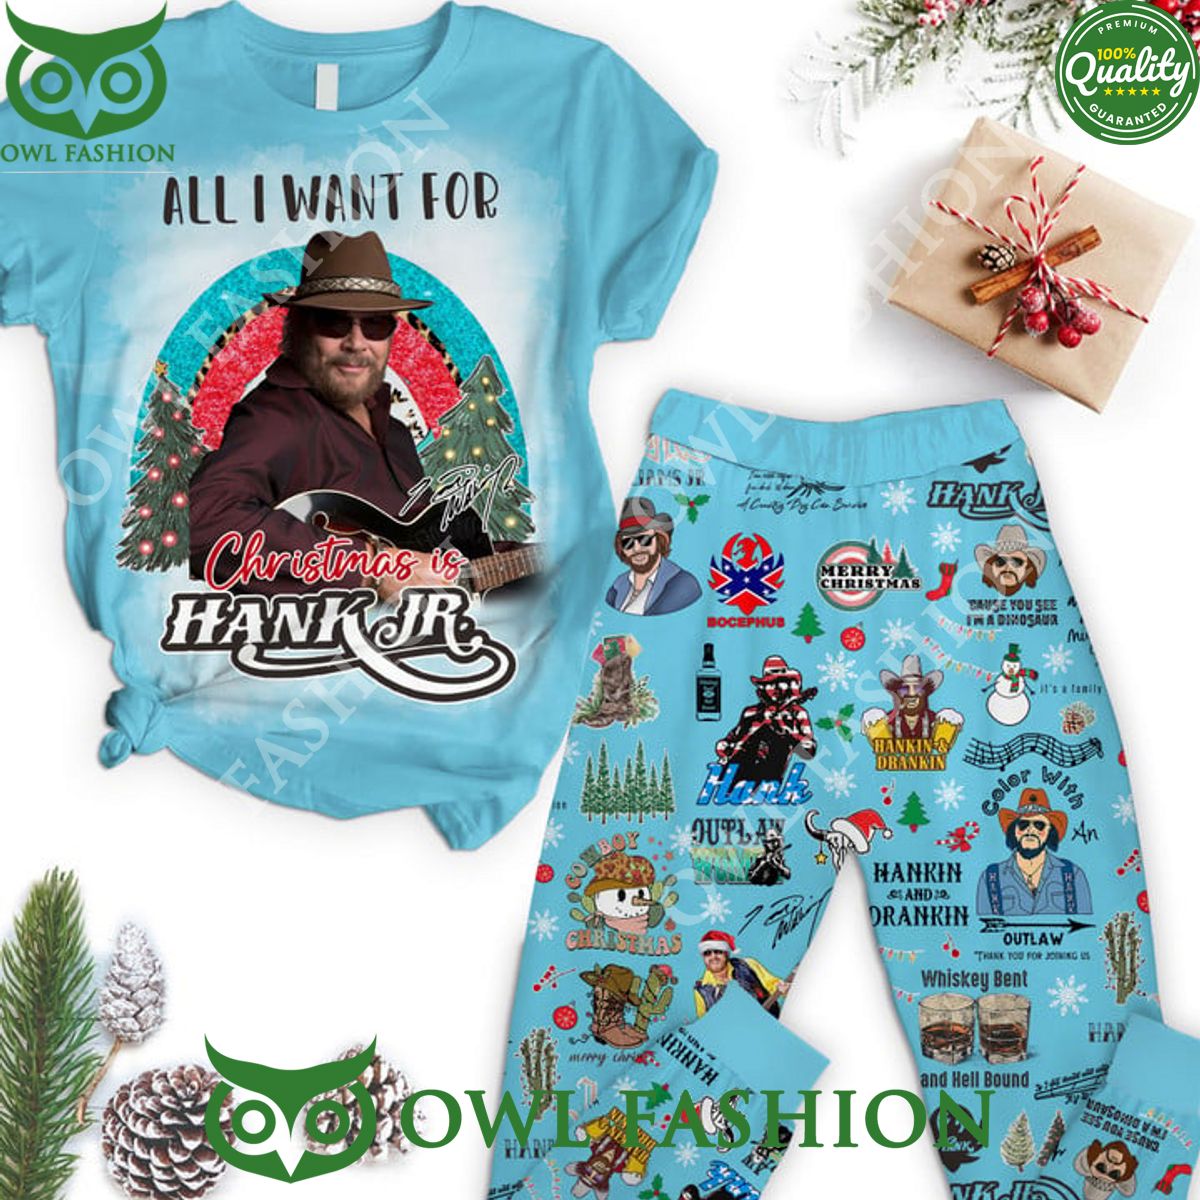 Hank Williams Jr. Christmas Pajamas Set All I want for